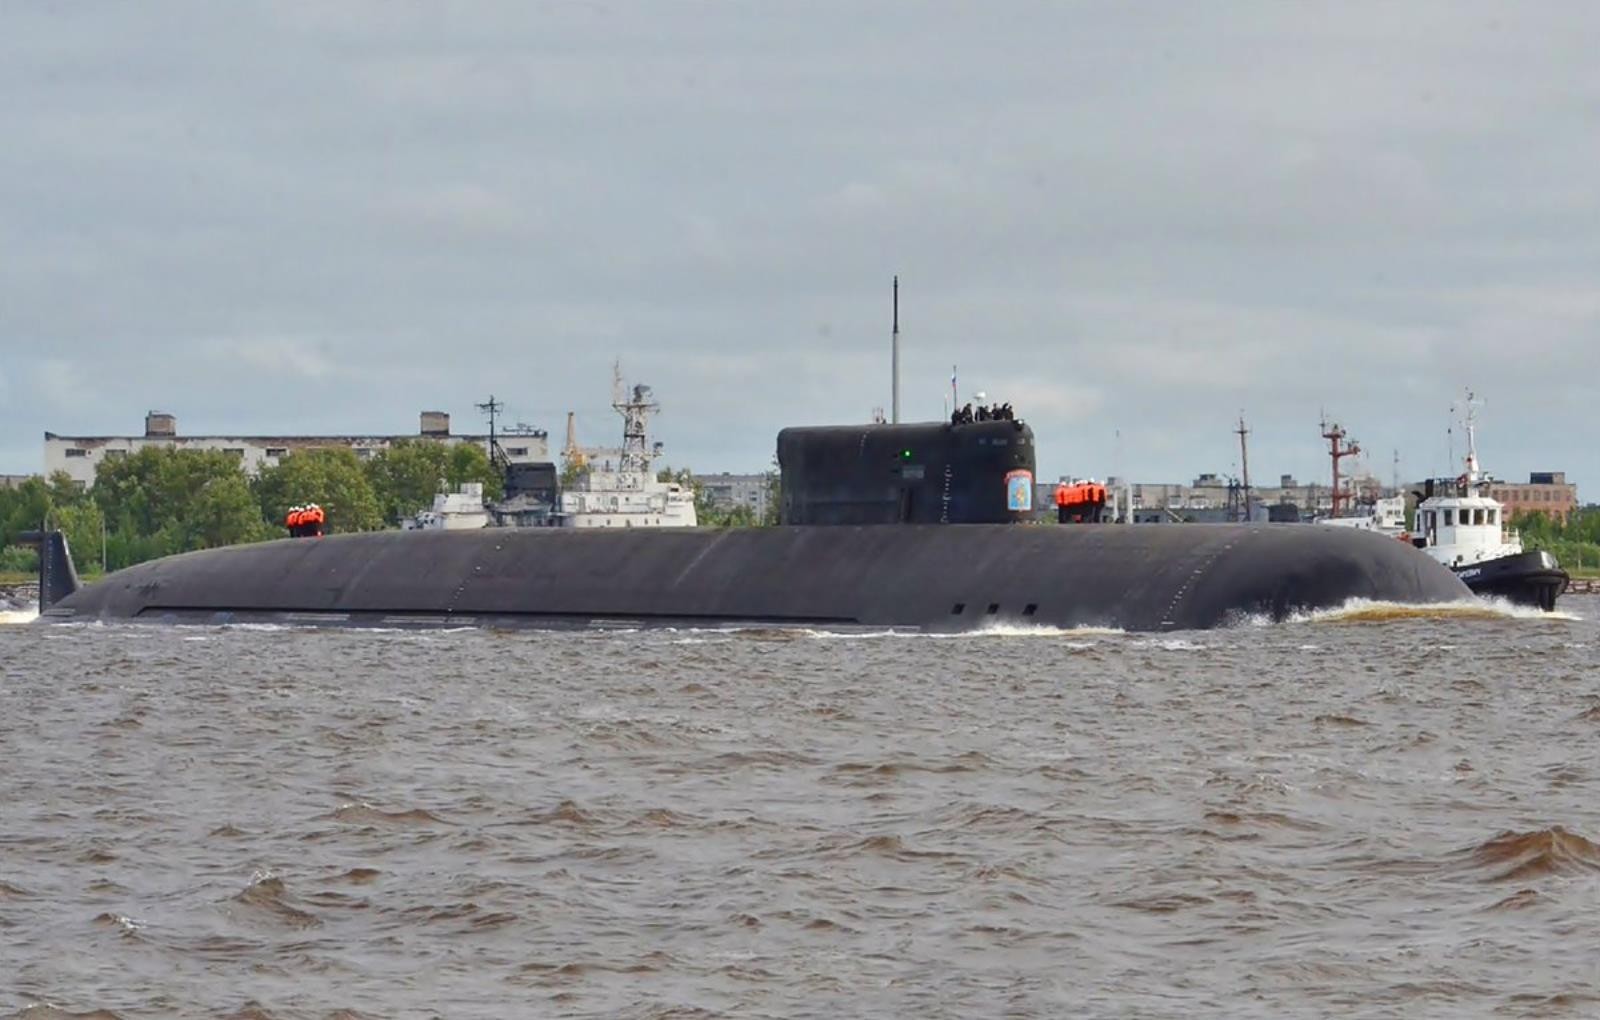 Rosyjski okręt podwodny Biełgorod odszukany. Po wejściu na służbę “wyparował”